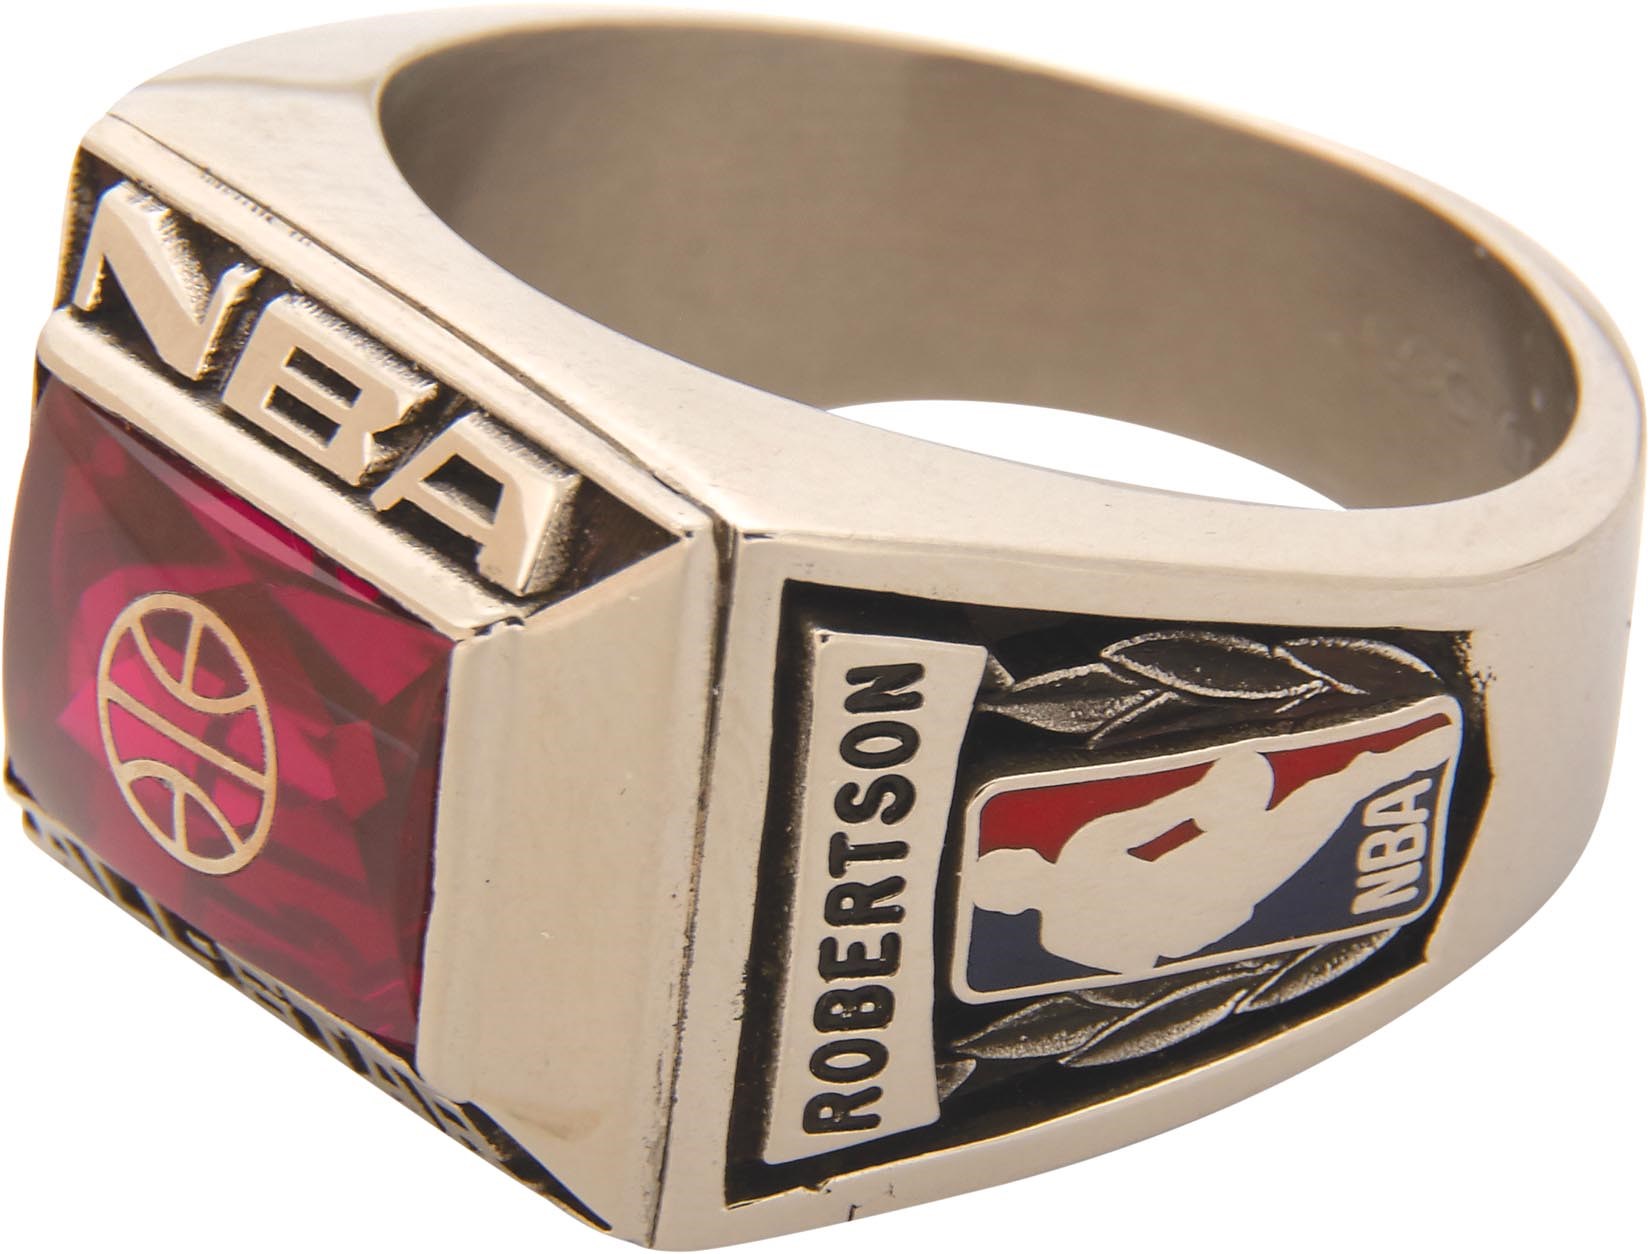 The Oscar Robertson Collection - 1990 Oscar Robertson NBA All-Star Game Ring